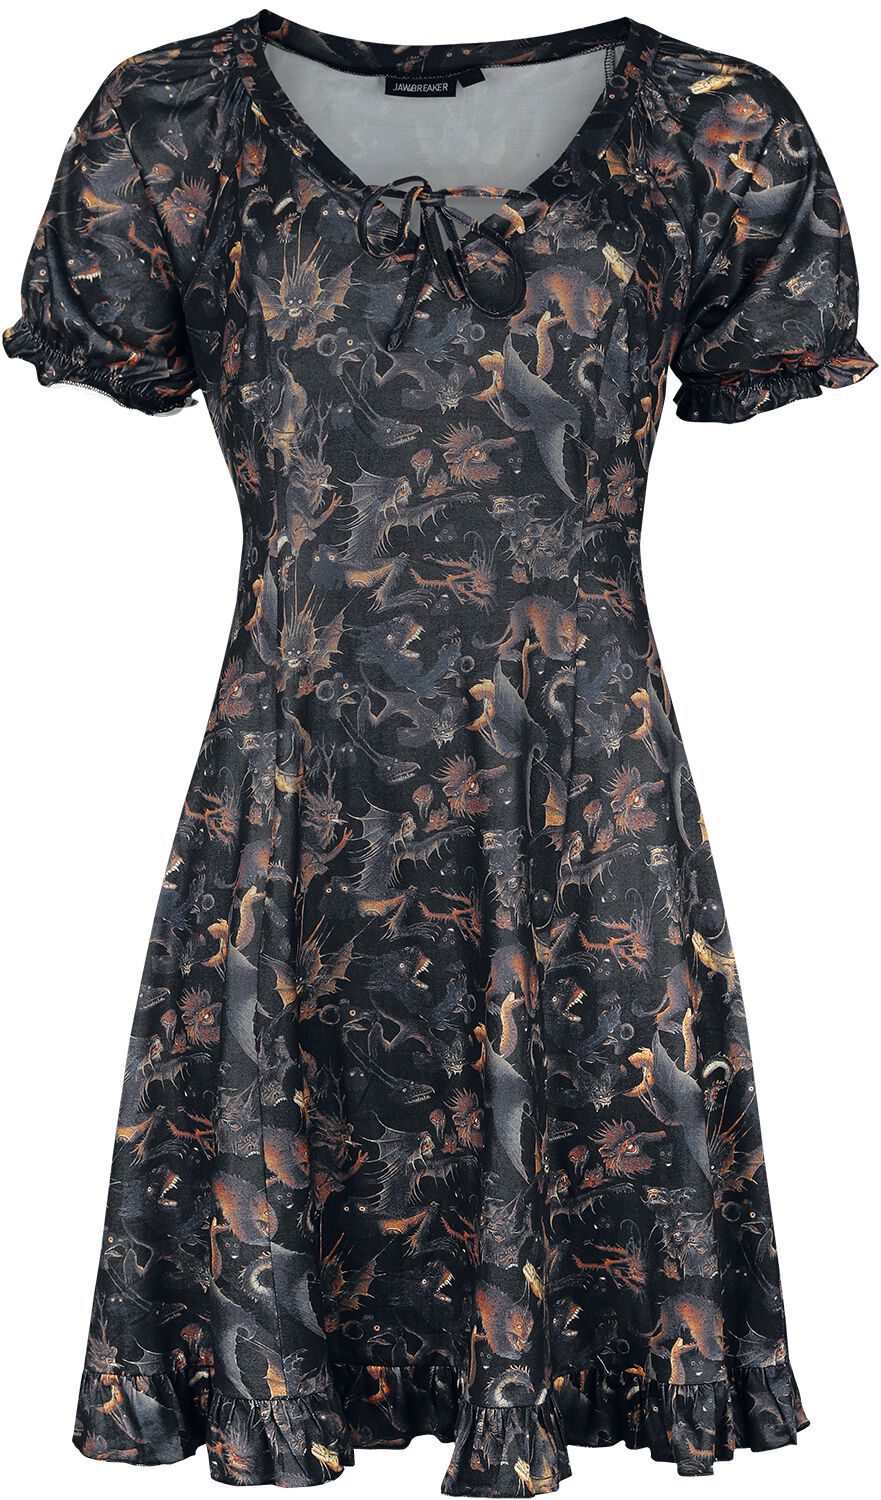 Robe courte Gothic de Jawbreaker - Paradise Lost Dress - XS - pour Femme - multicolore